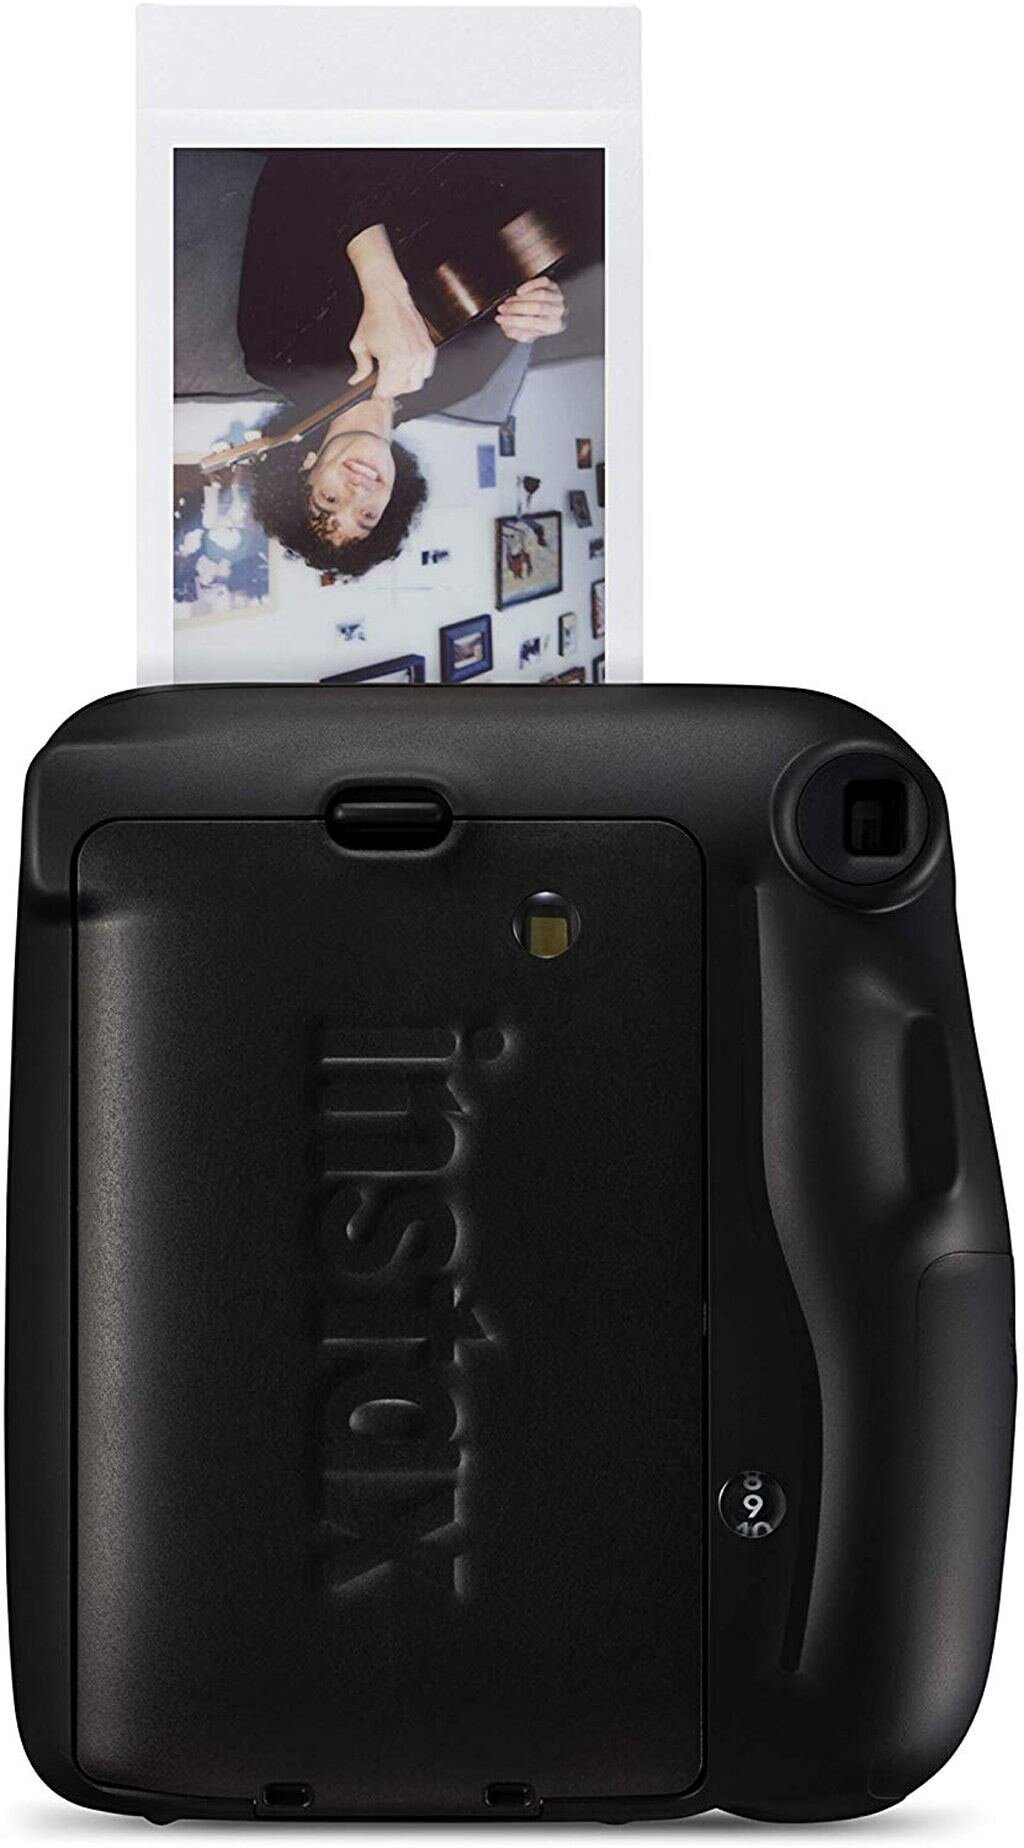 Fujifilm Instax Mini 11 Charcoal Gray Sofortbildkamera